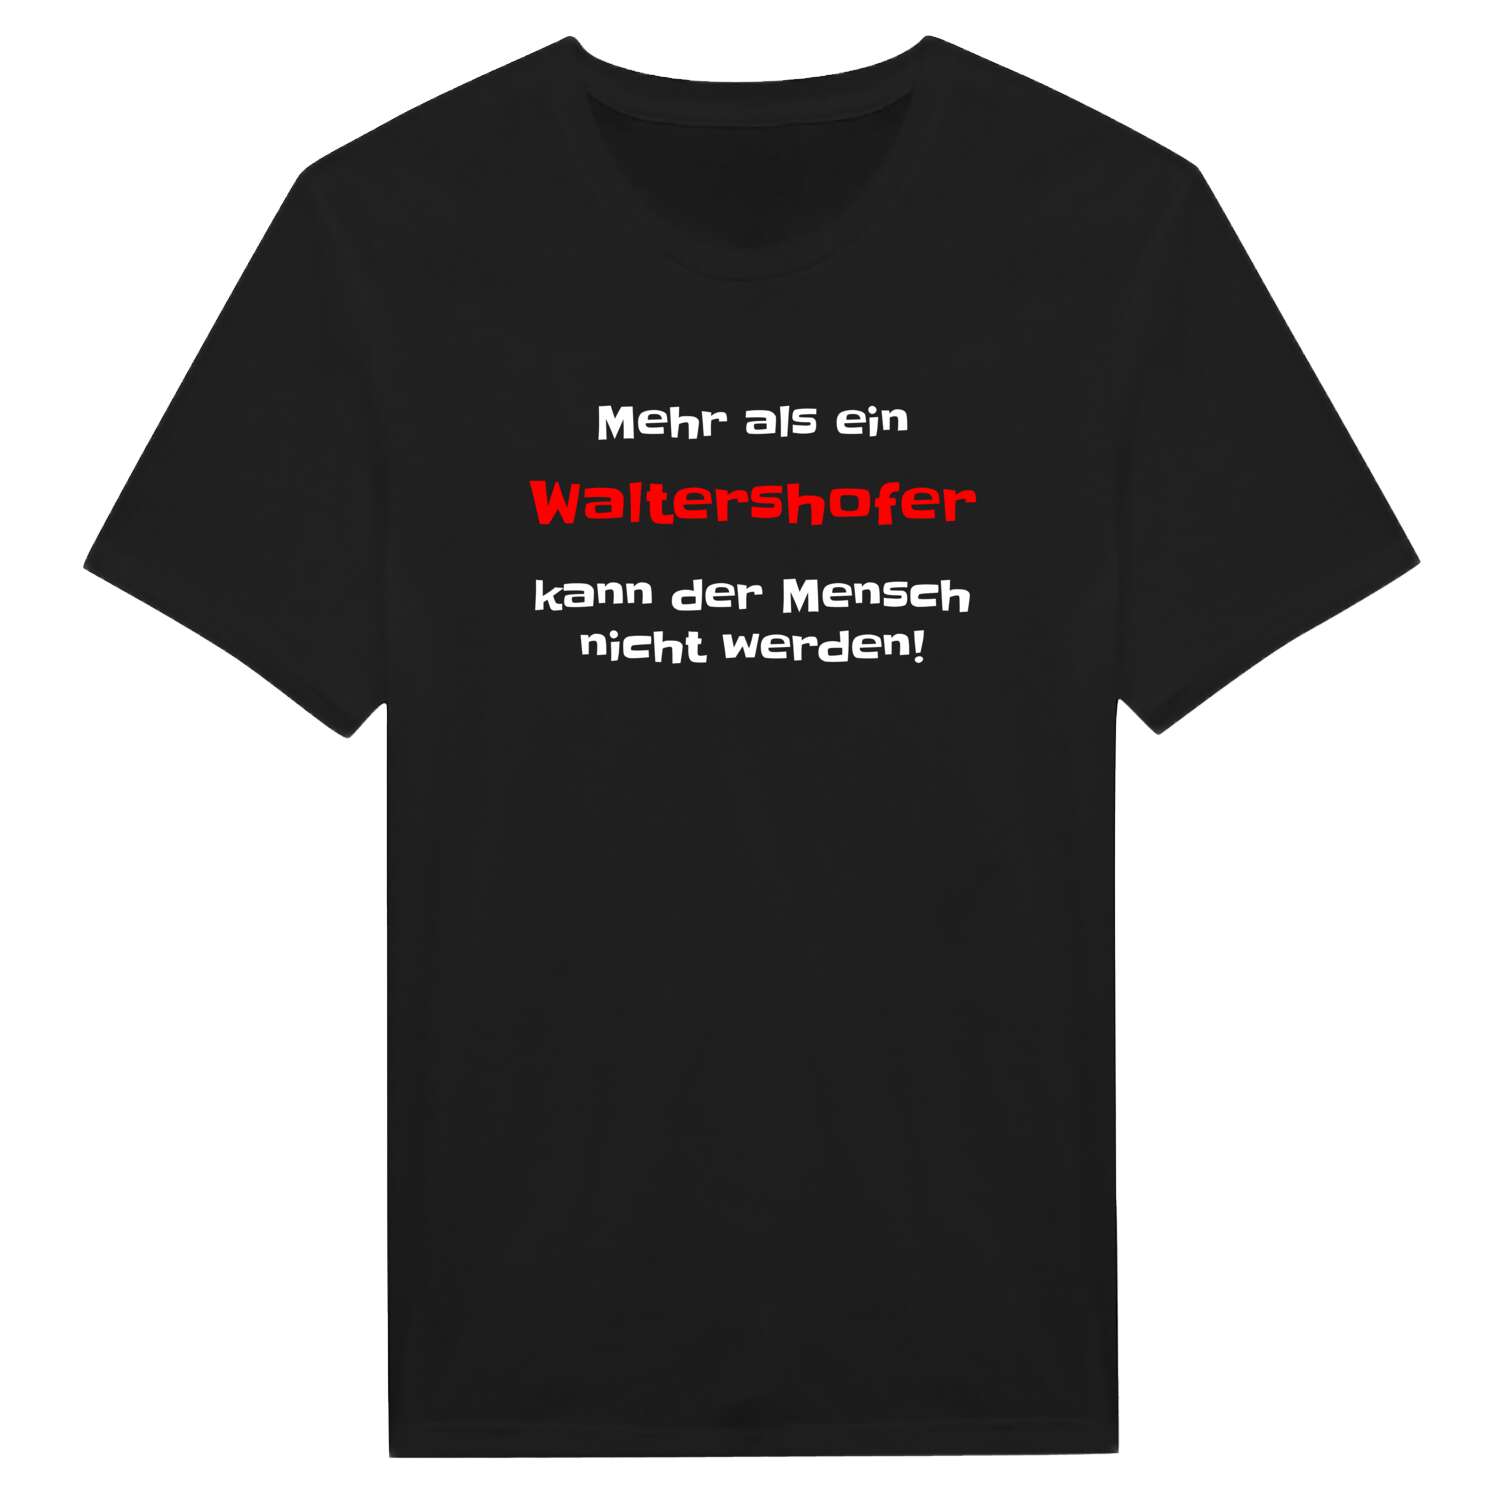 Waltershof T-Shirt »Mehr als ein«